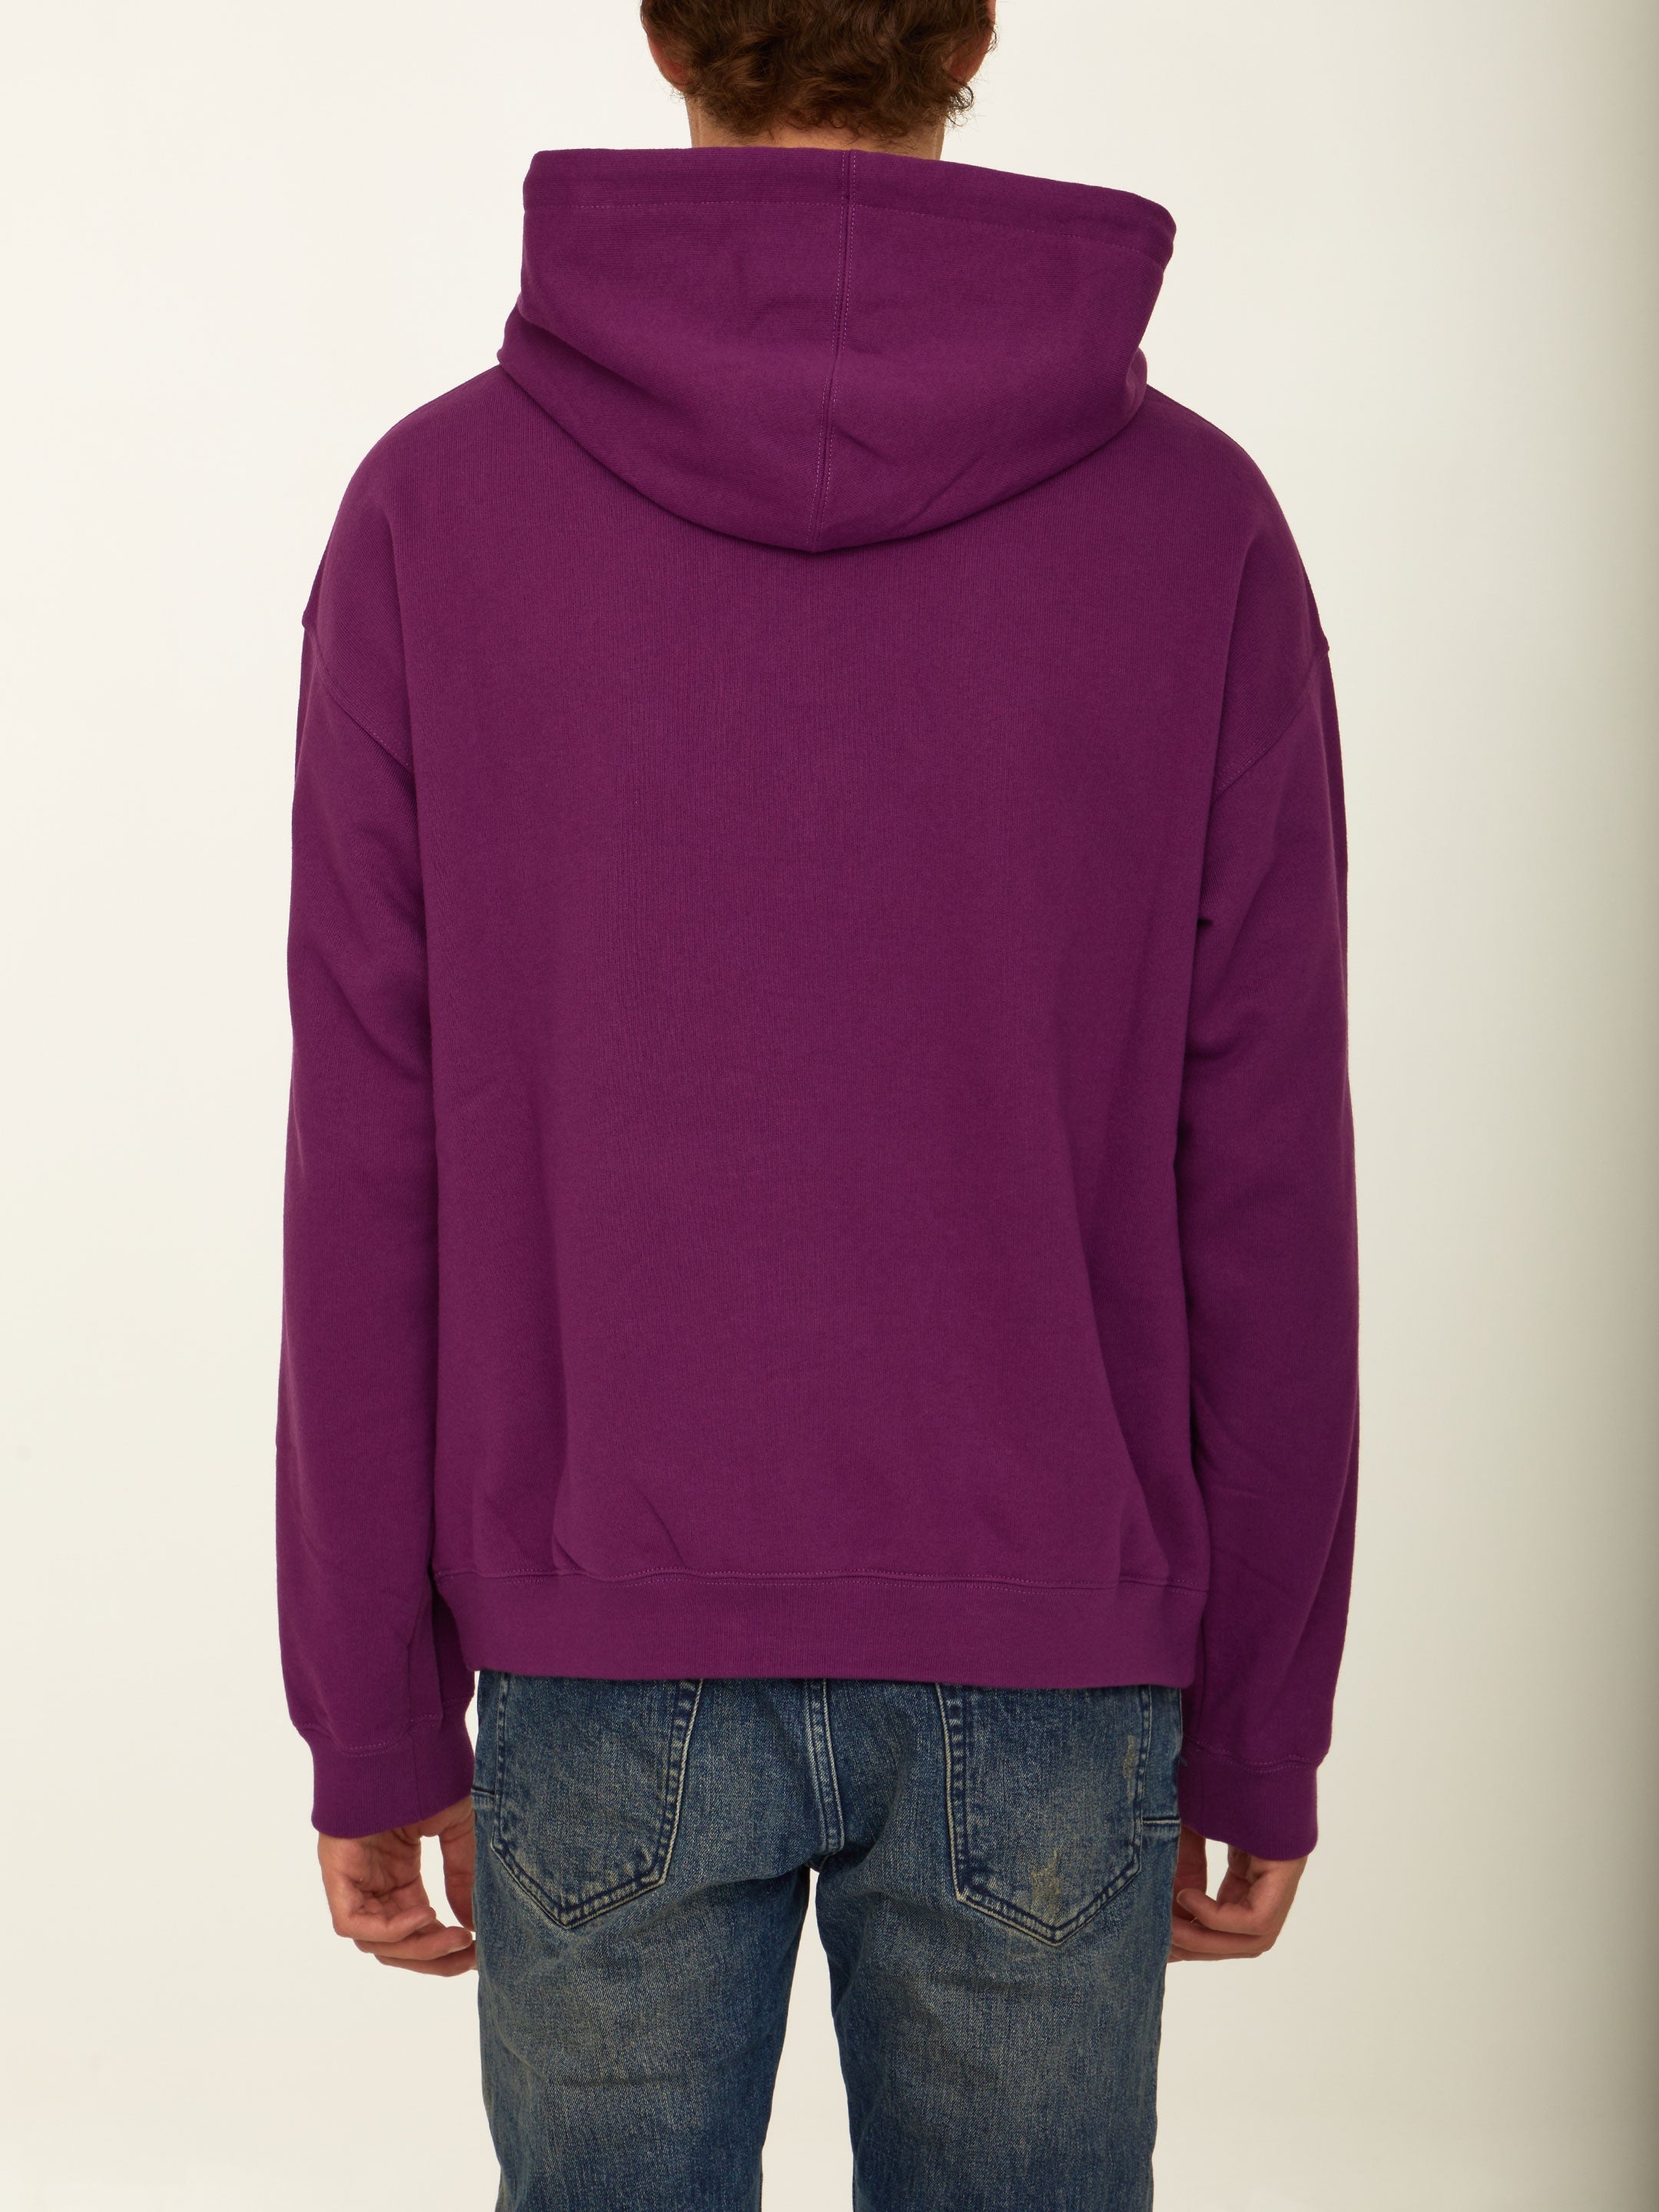 Printed purple hoodie